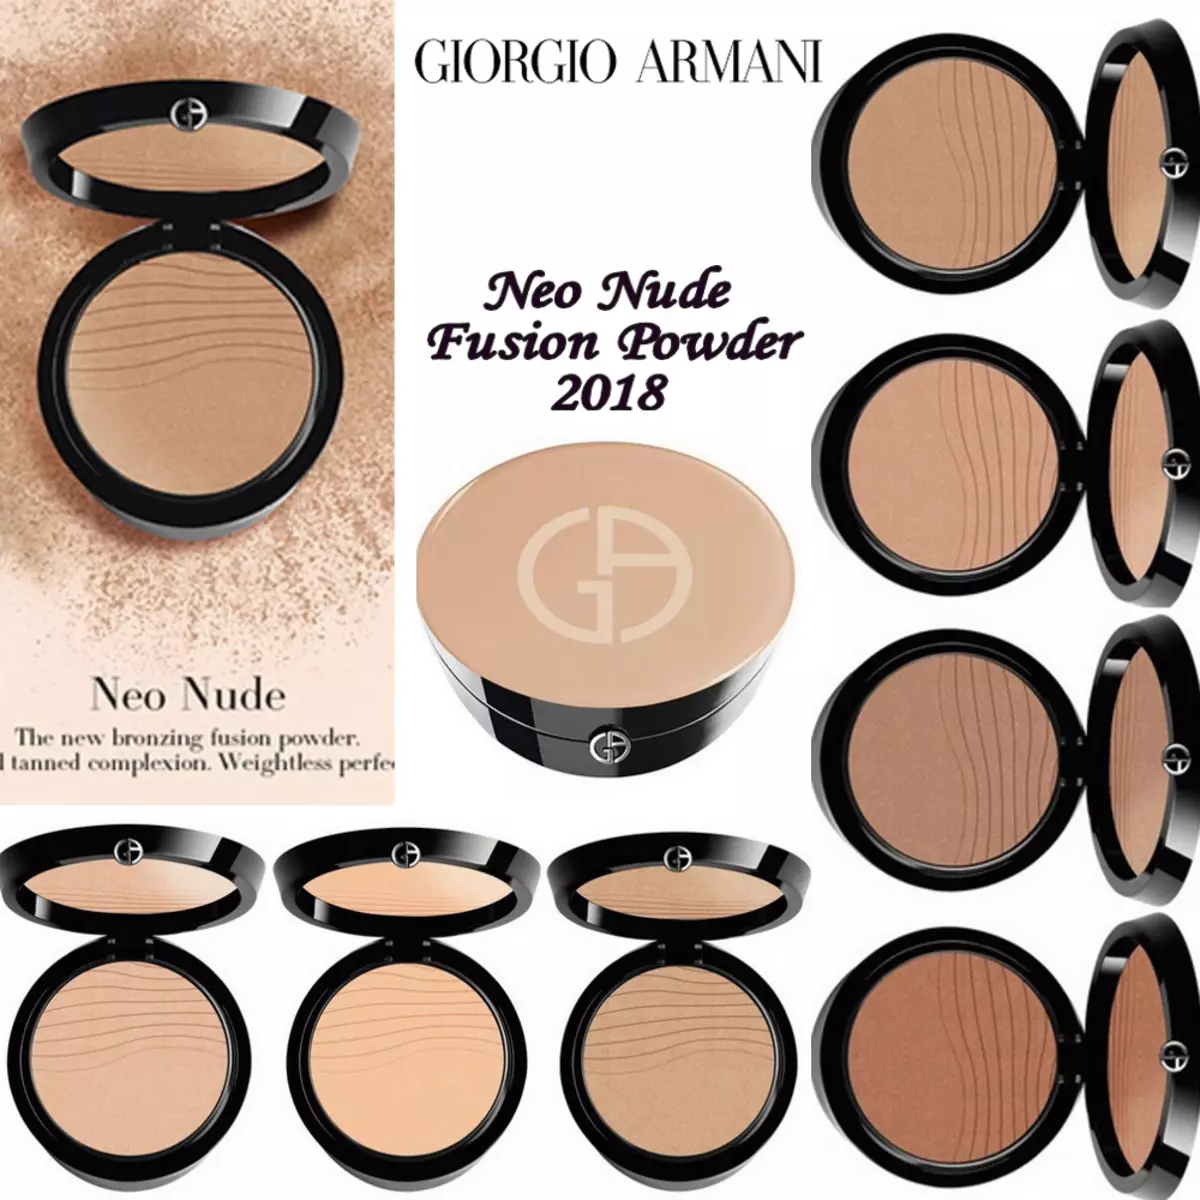 Cosmetics Giorgio Armani: Adolygiad o Cosmetics Addurnol, Manteision ac Anfanteision, Dewis 4906_11